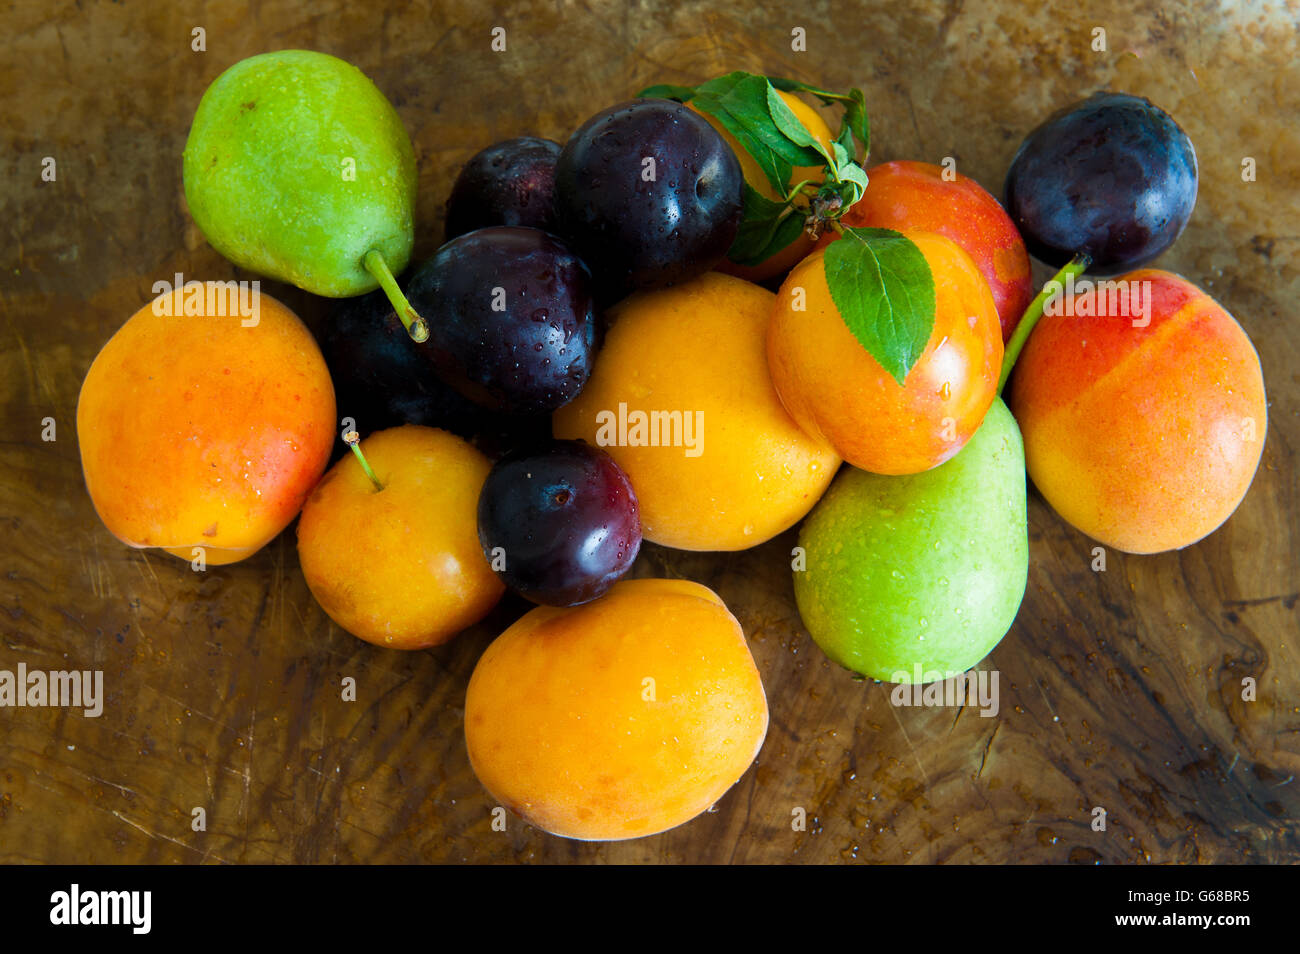 Montón de ciruela, albaricoque, pera, colorida fruta fresca de la temporada en madera baclground Foto de stock